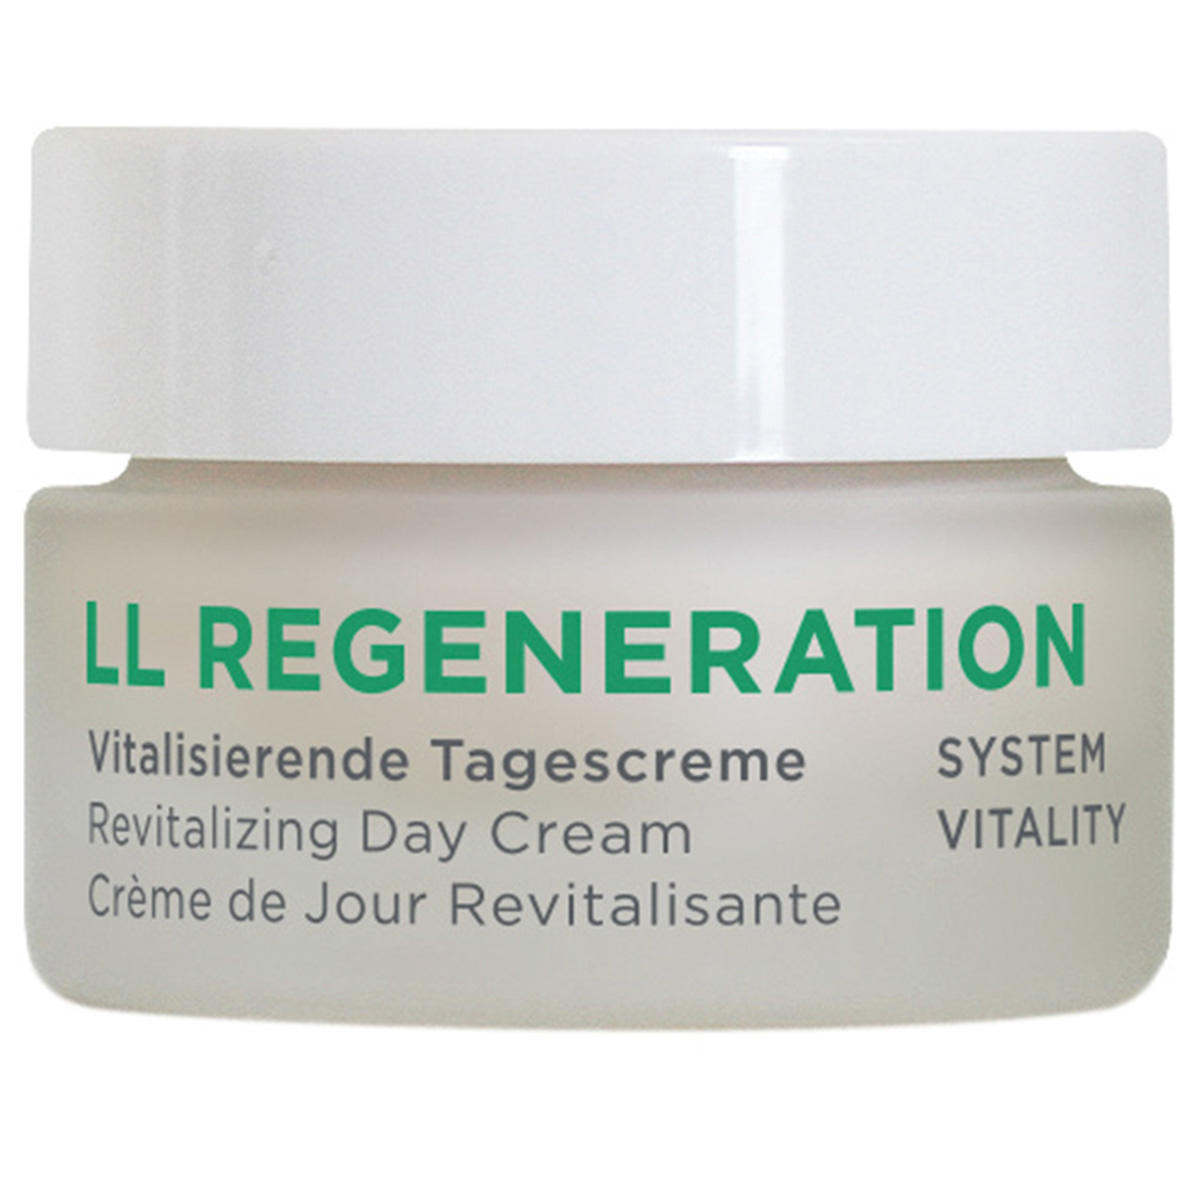 ANNEMARIE BÖRLIND LL REGENERATION Crème de Jour Revitalisante TAILLE D'ACQUISITION 15 ml - 1